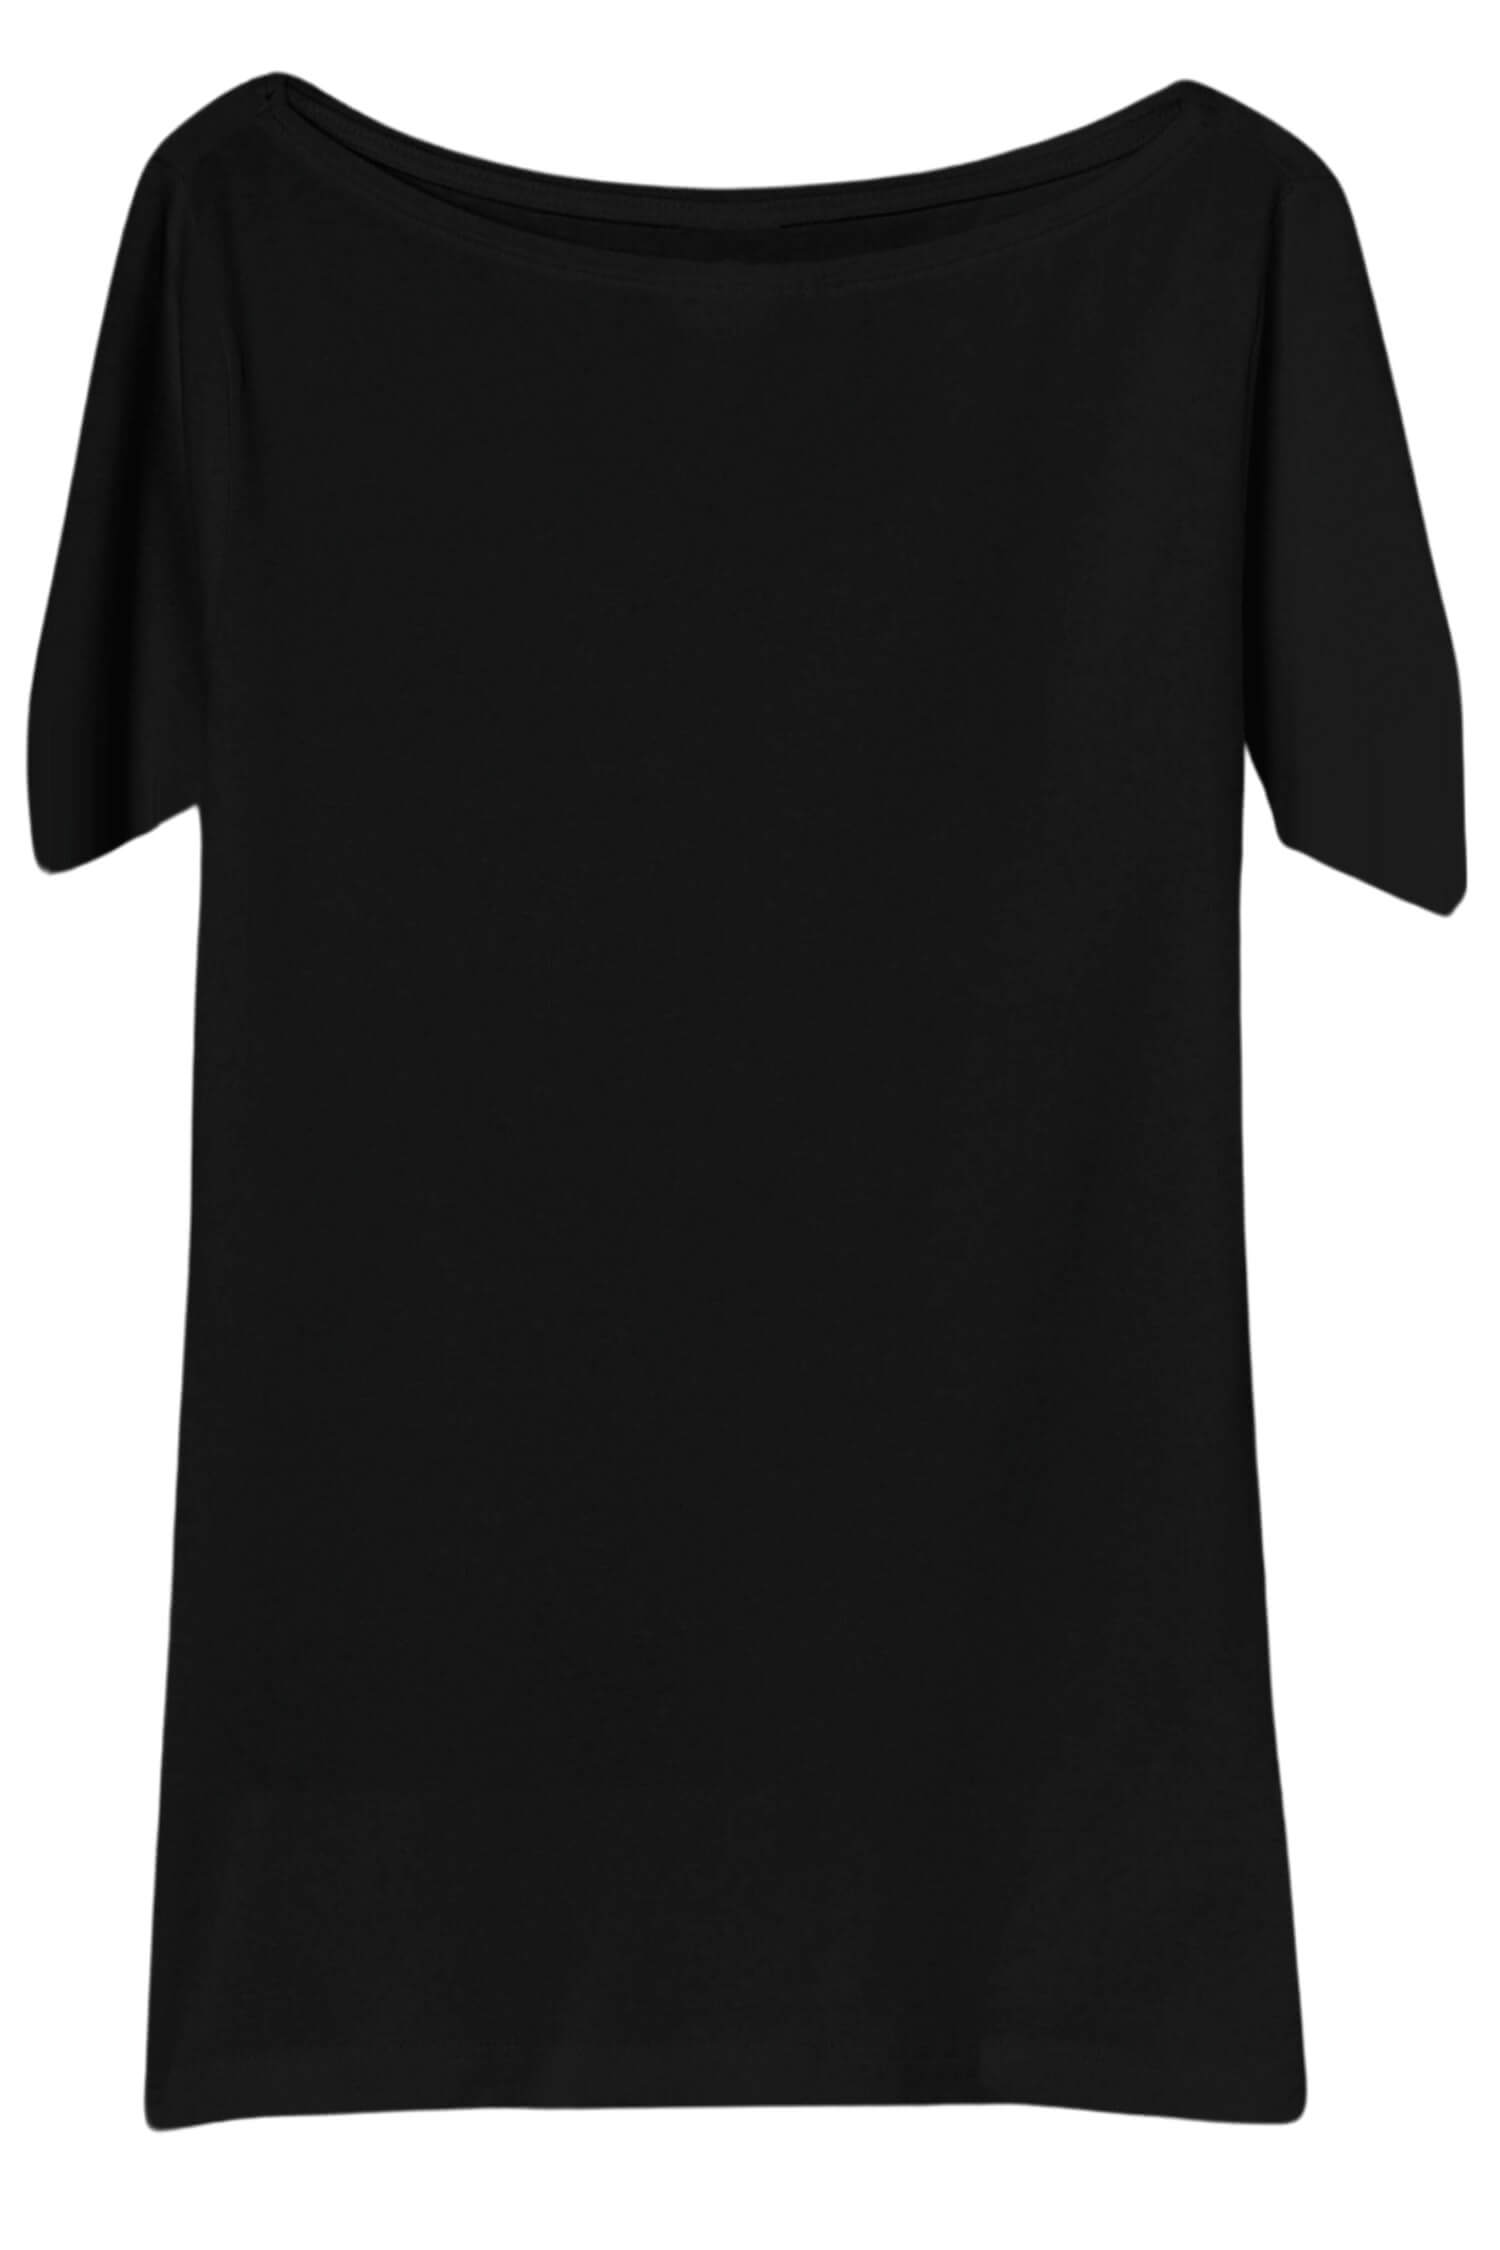 Danica dámské tričko s krátkým rukávem TSK-1005 černá L